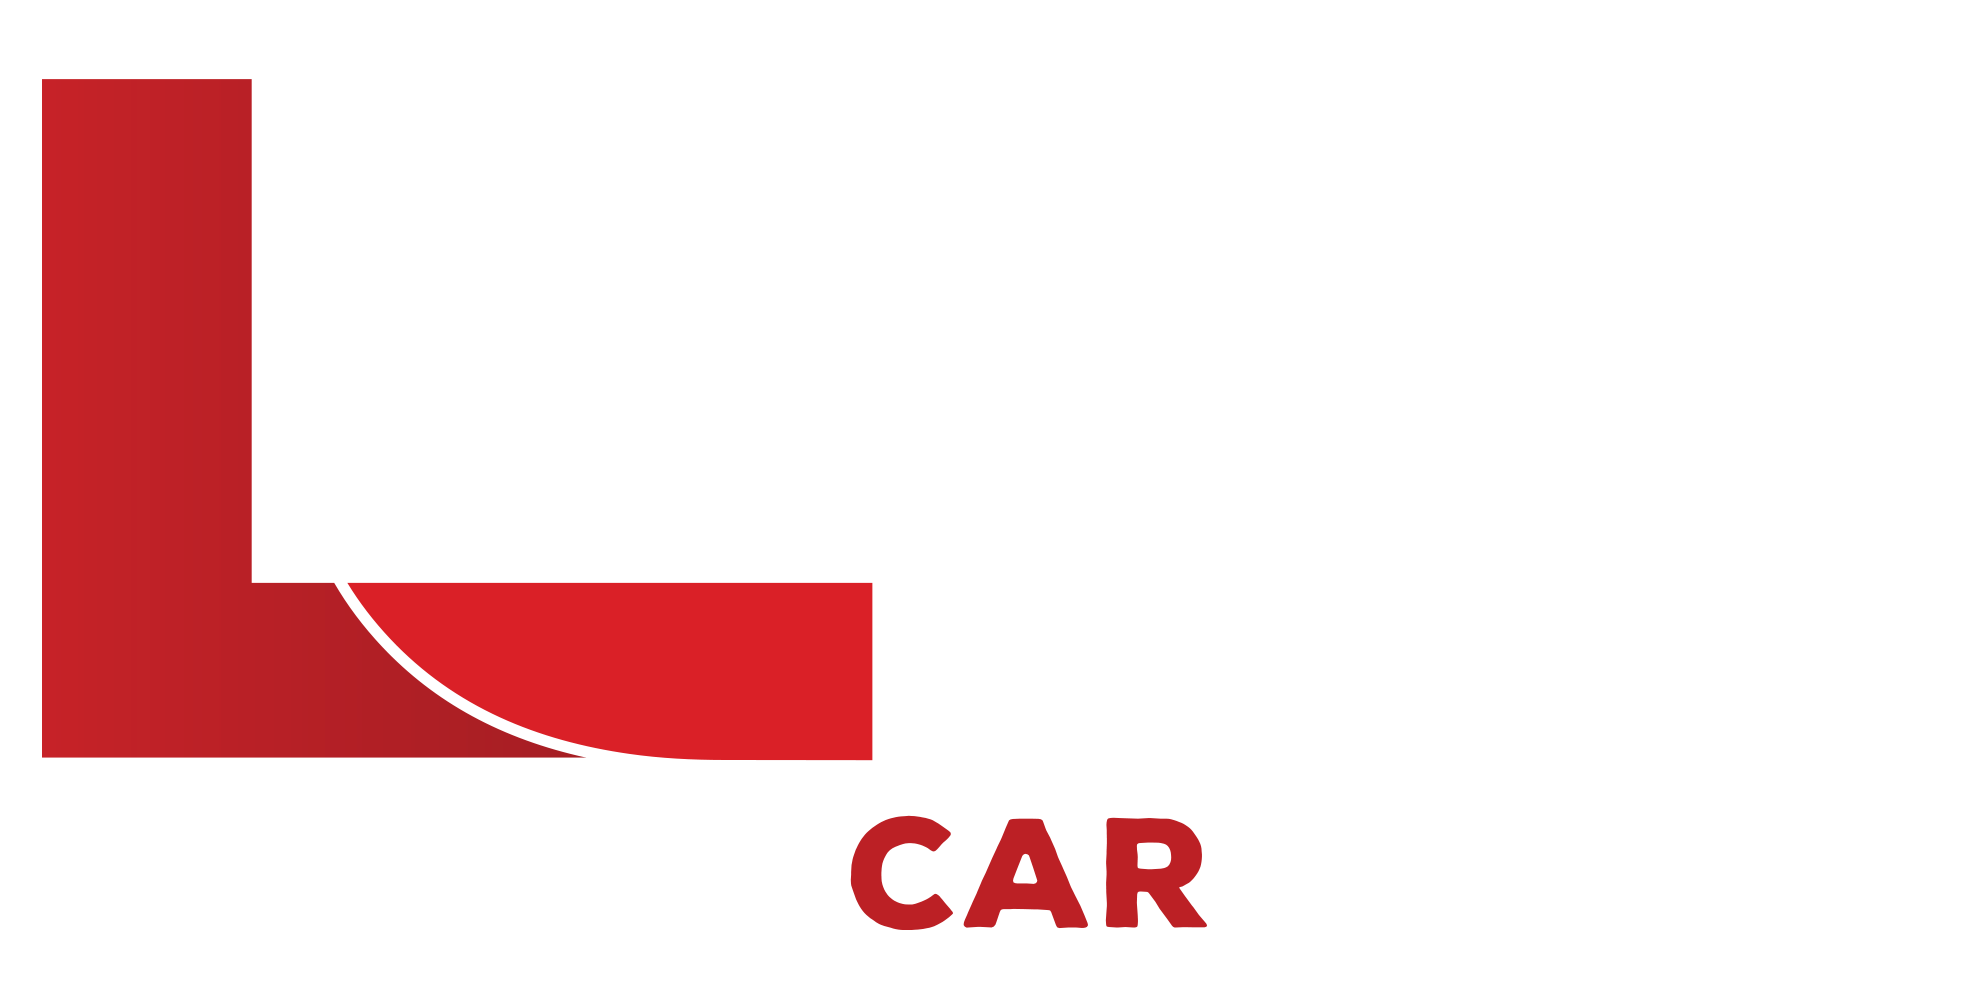 Car Rental Services in Dubai